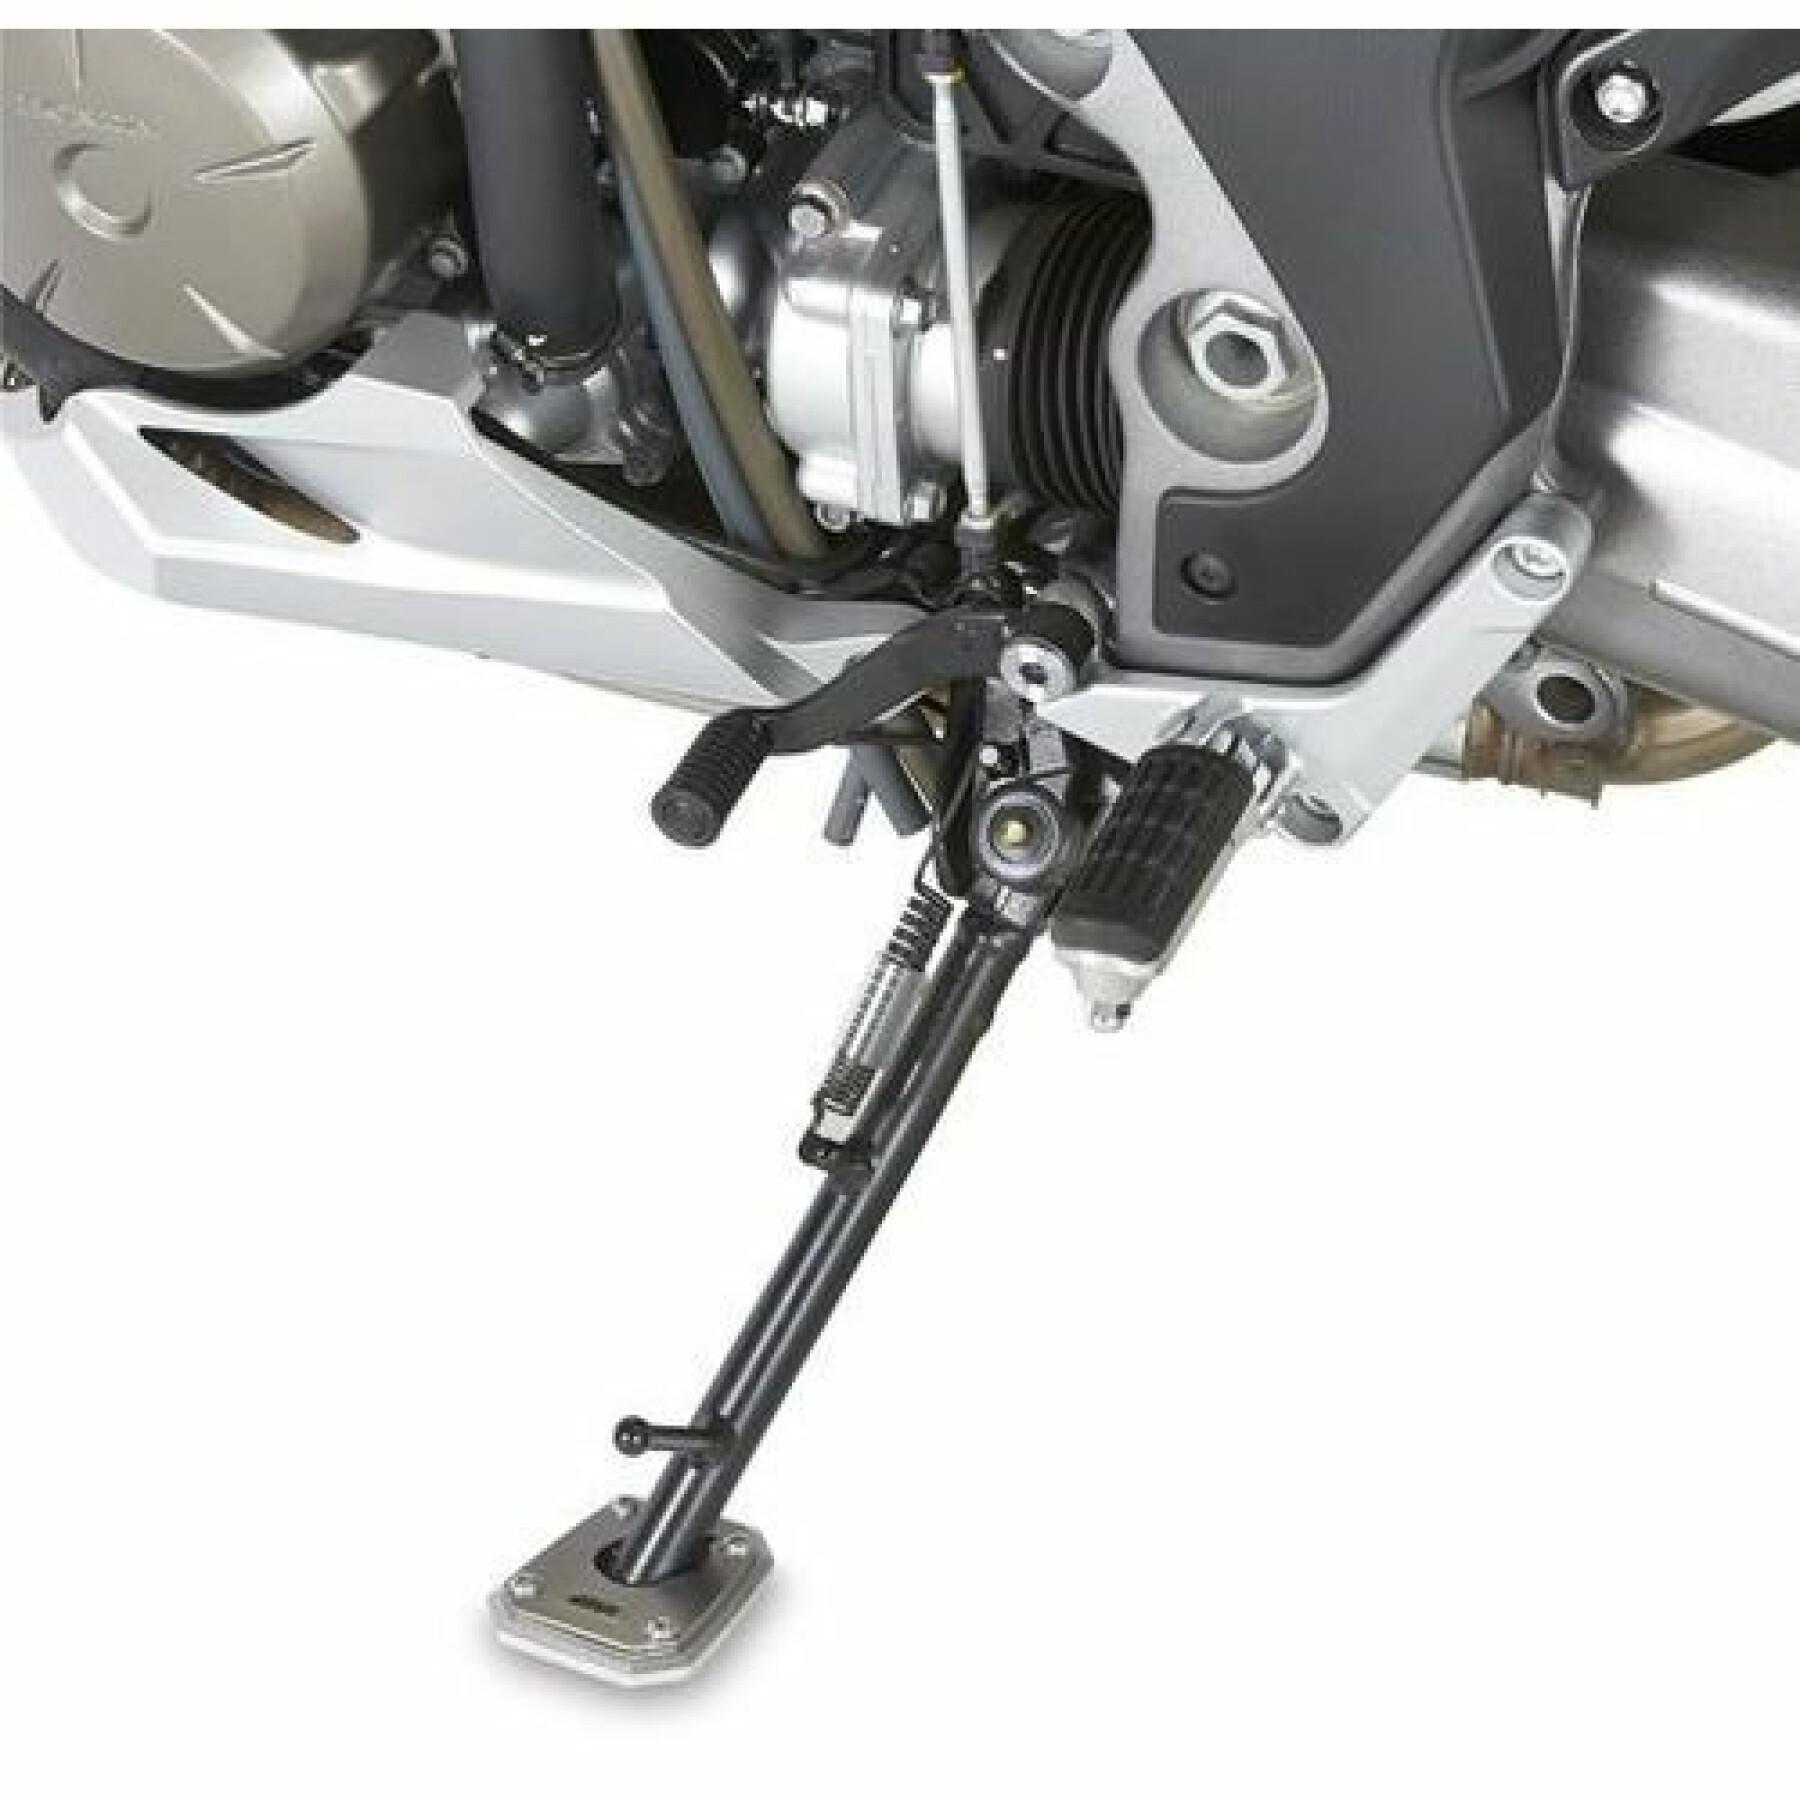 Suola della stampella Givi Yamaha MT07 tracer